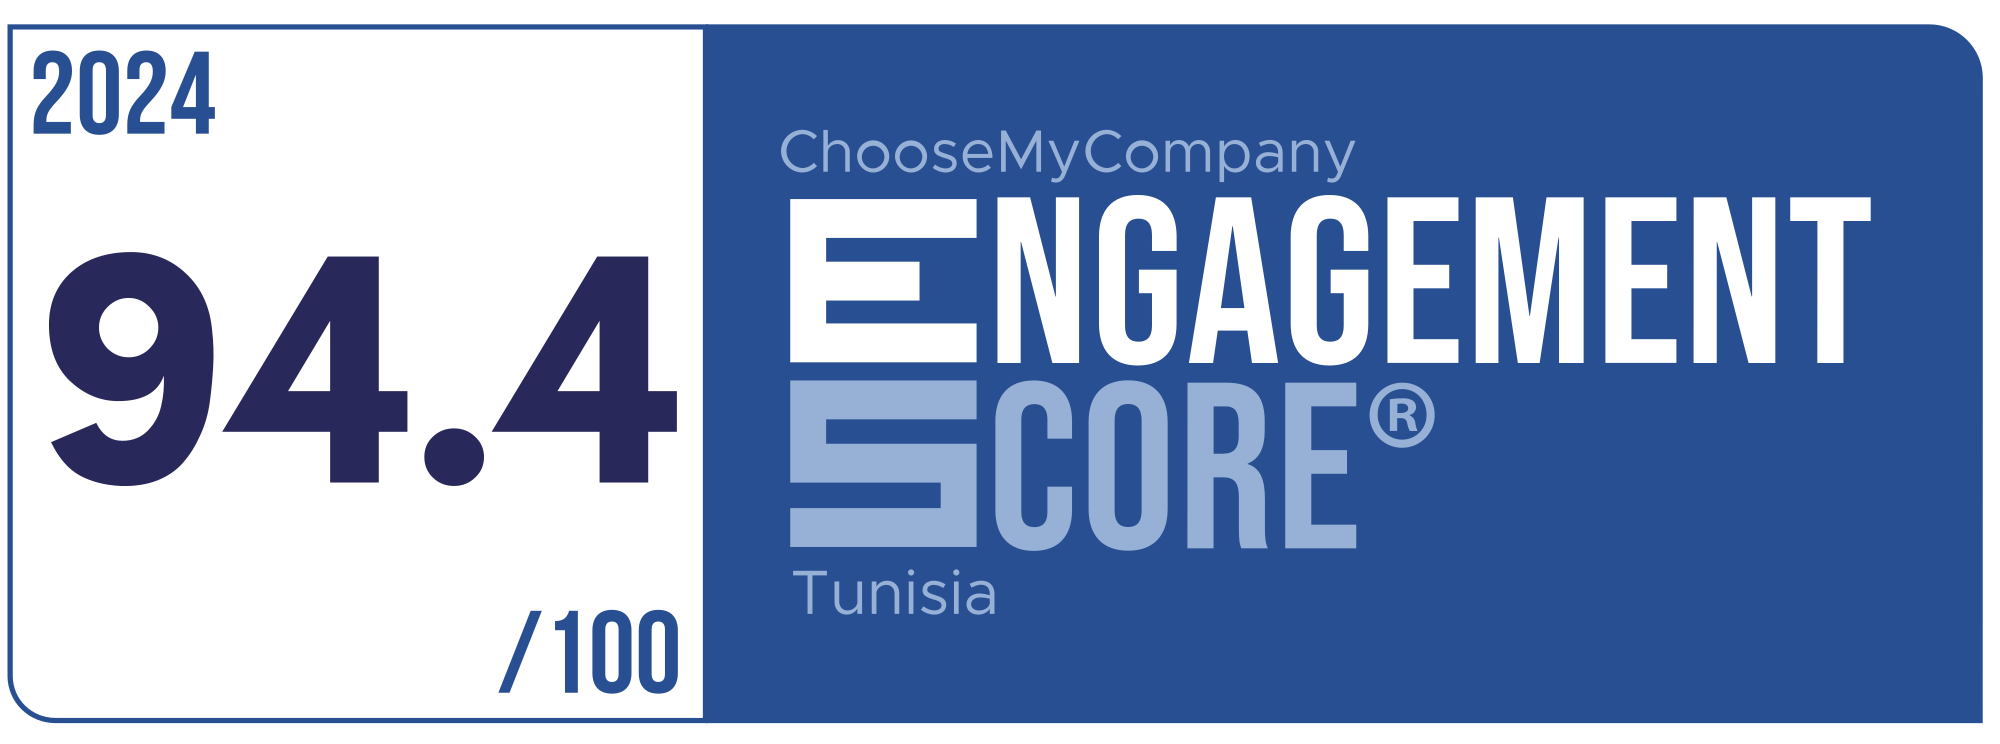 Label Engagement Score 2024 Tunisia